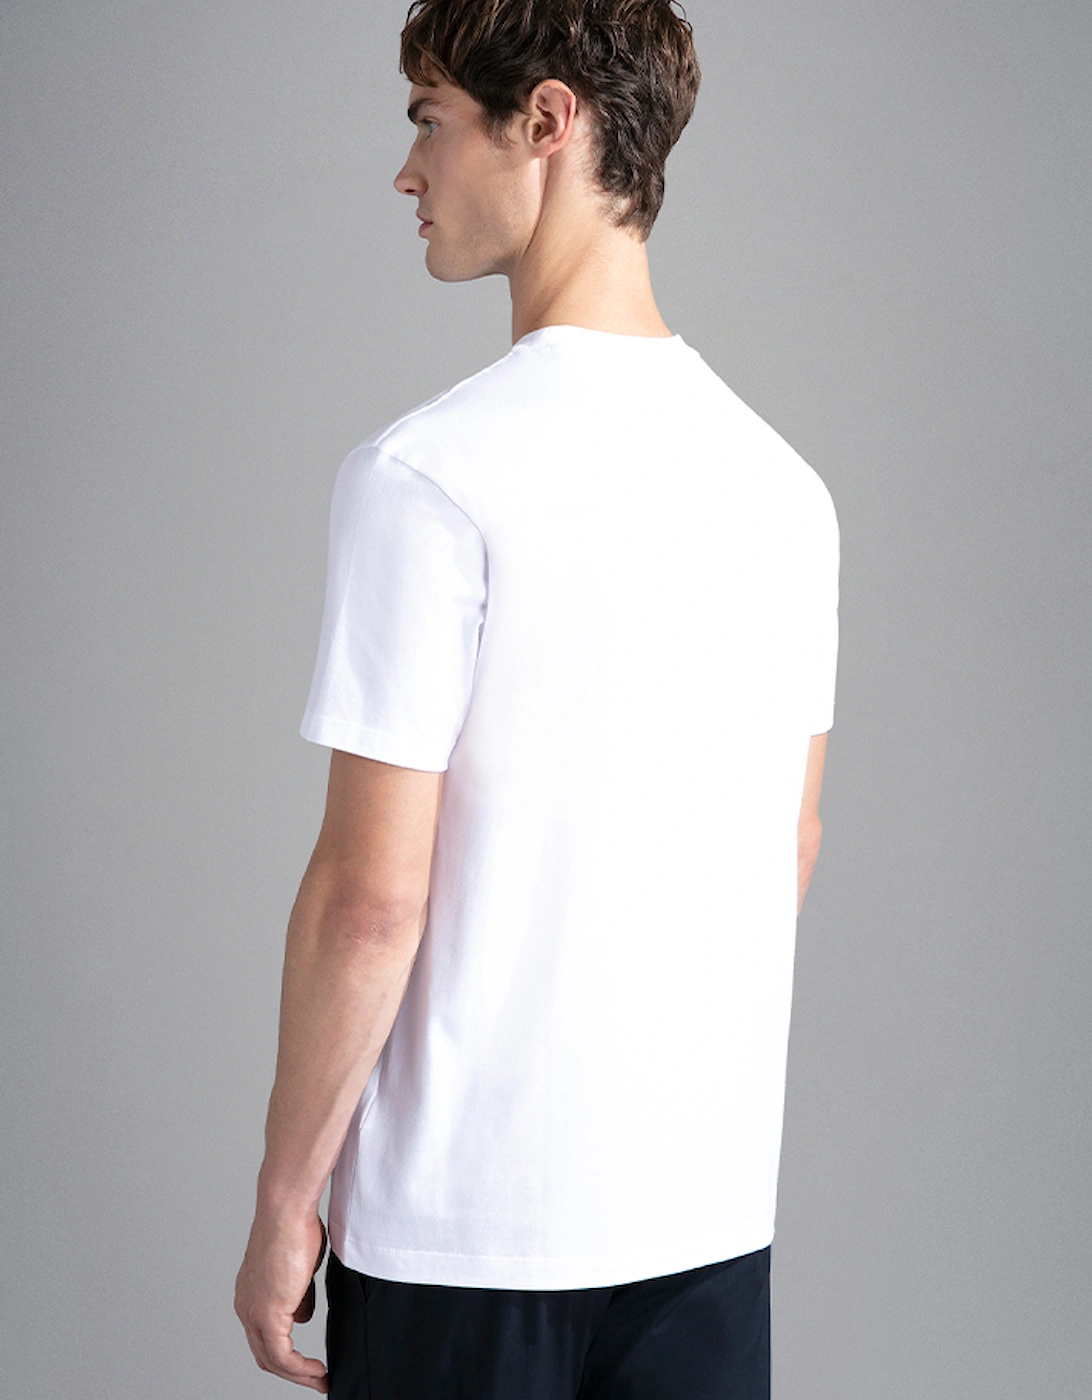 Men's Cotton Jersey T-Shirt with Multicolour Print